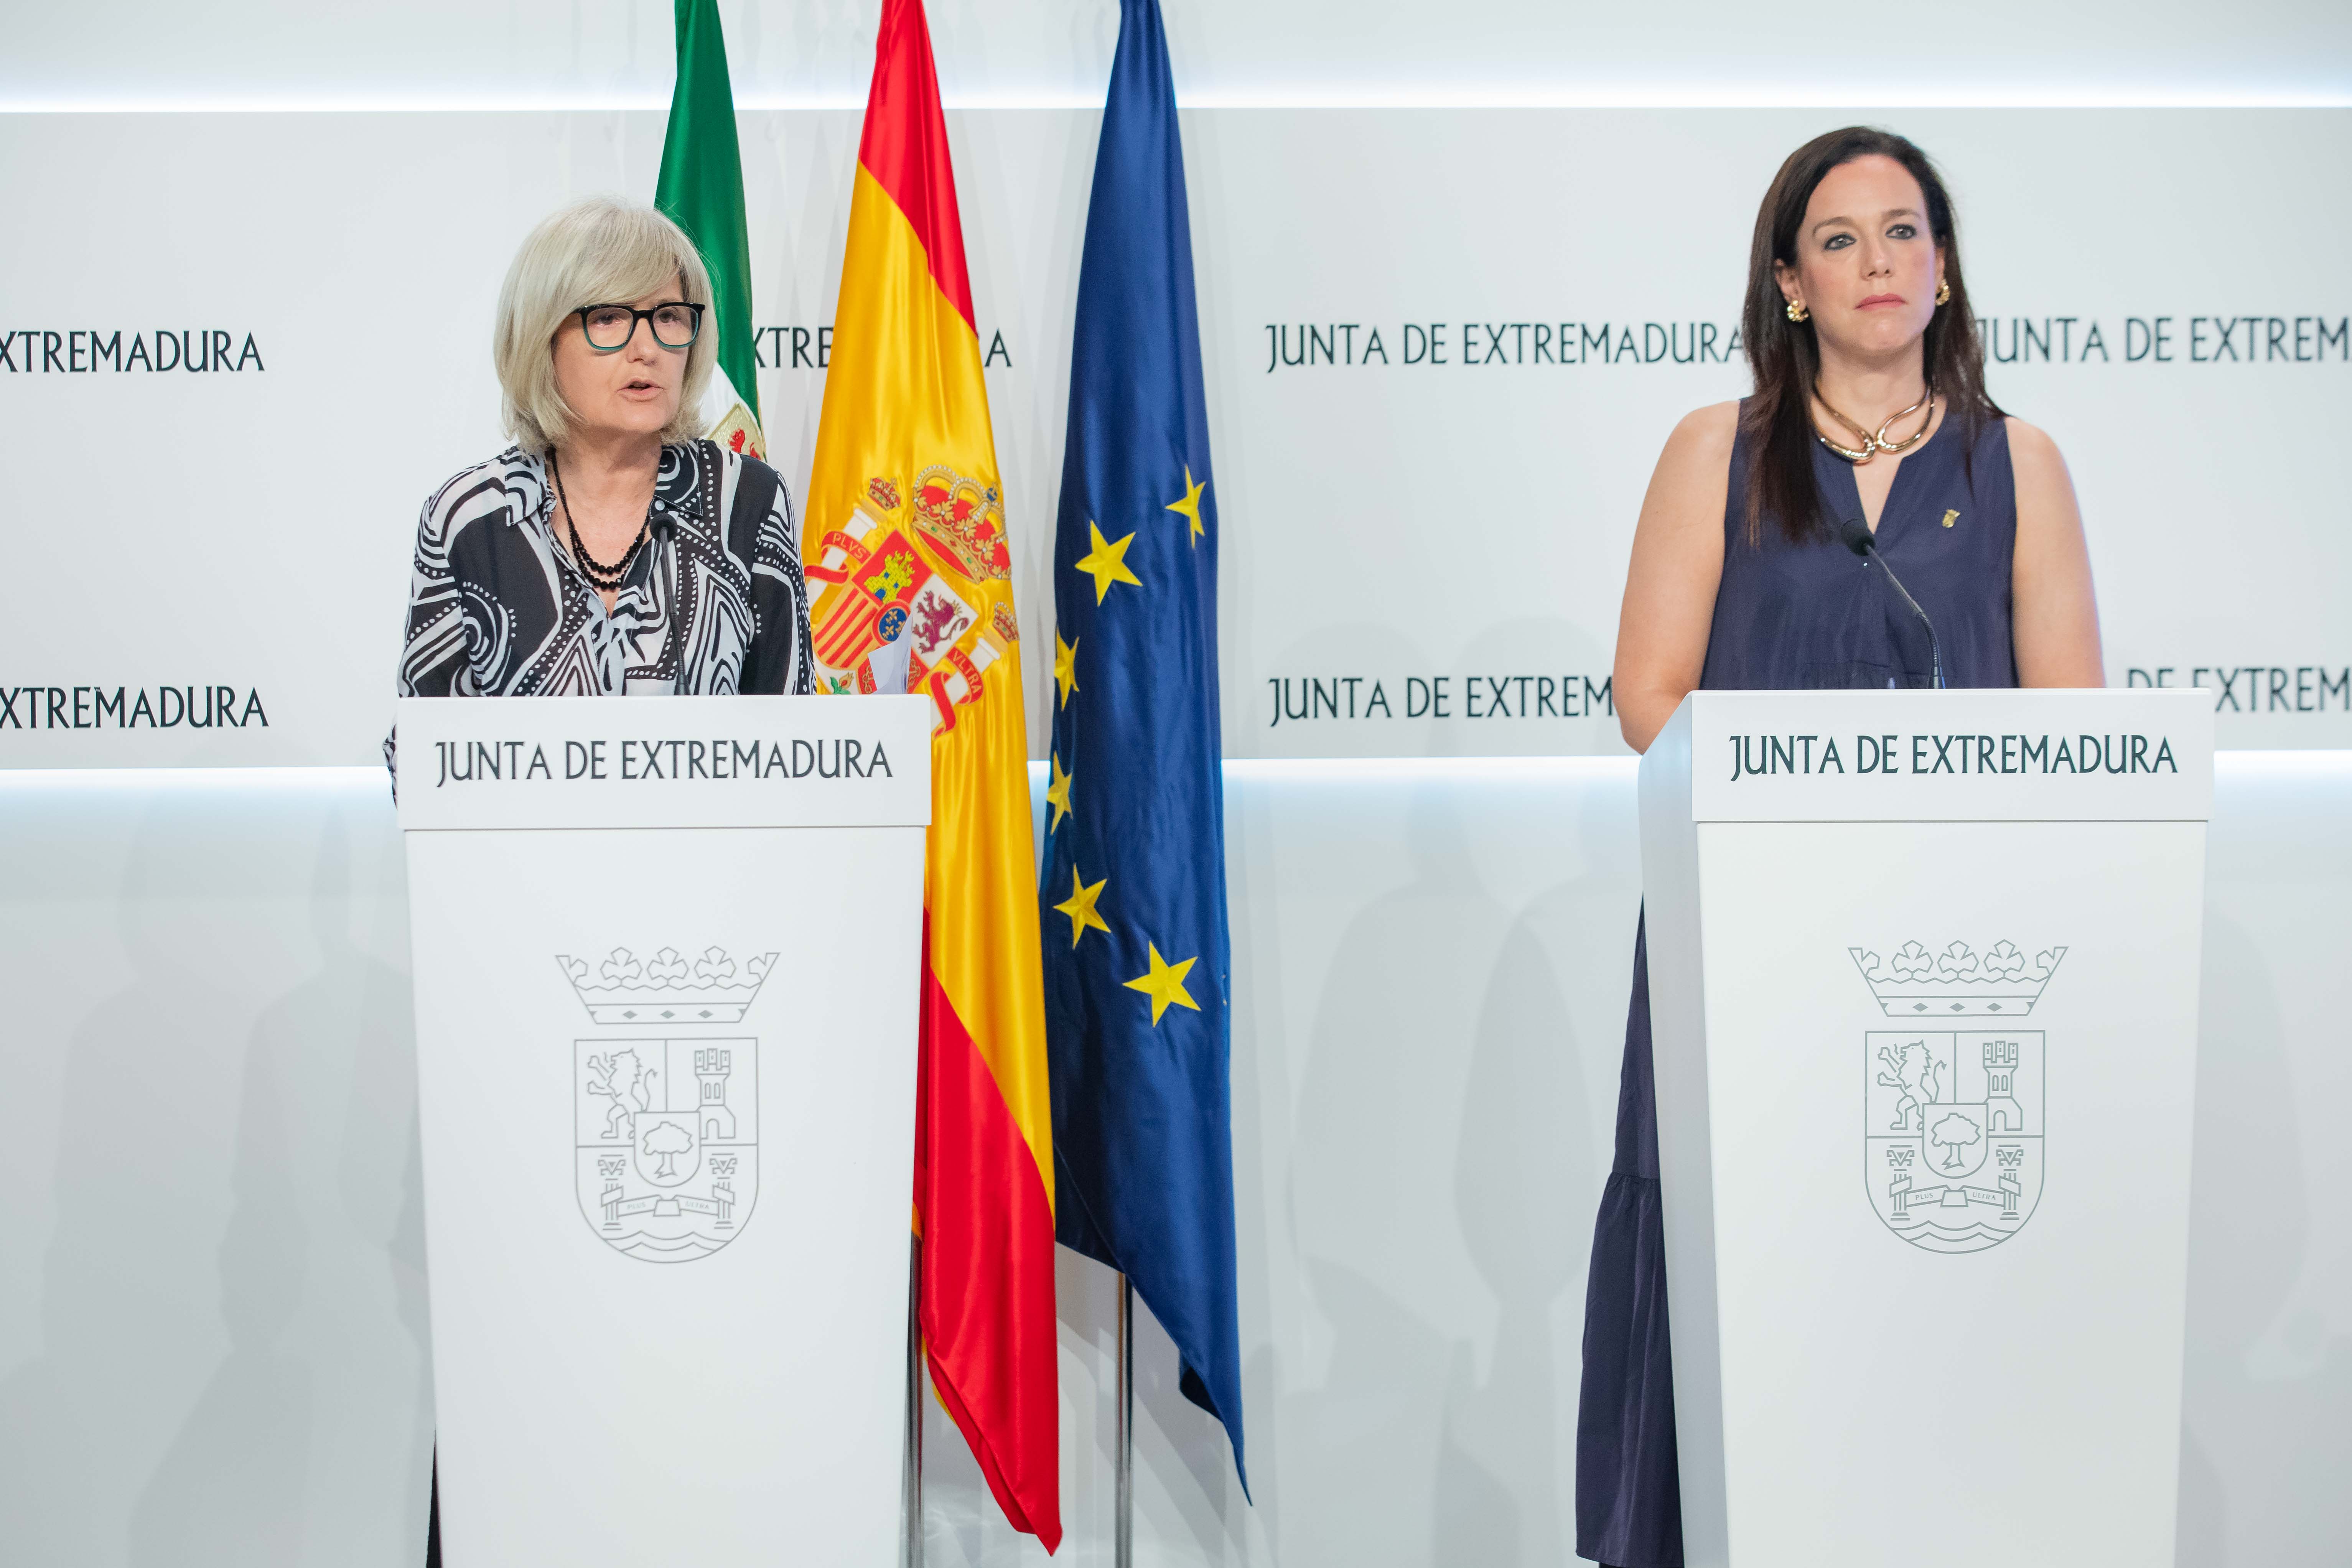 La portavoz de la Junta de Extremadura, Victoria Bazaga; y la consejera de Salud y Servicios Sociales, Sara Gª Espada, durante la rueda de prensa.